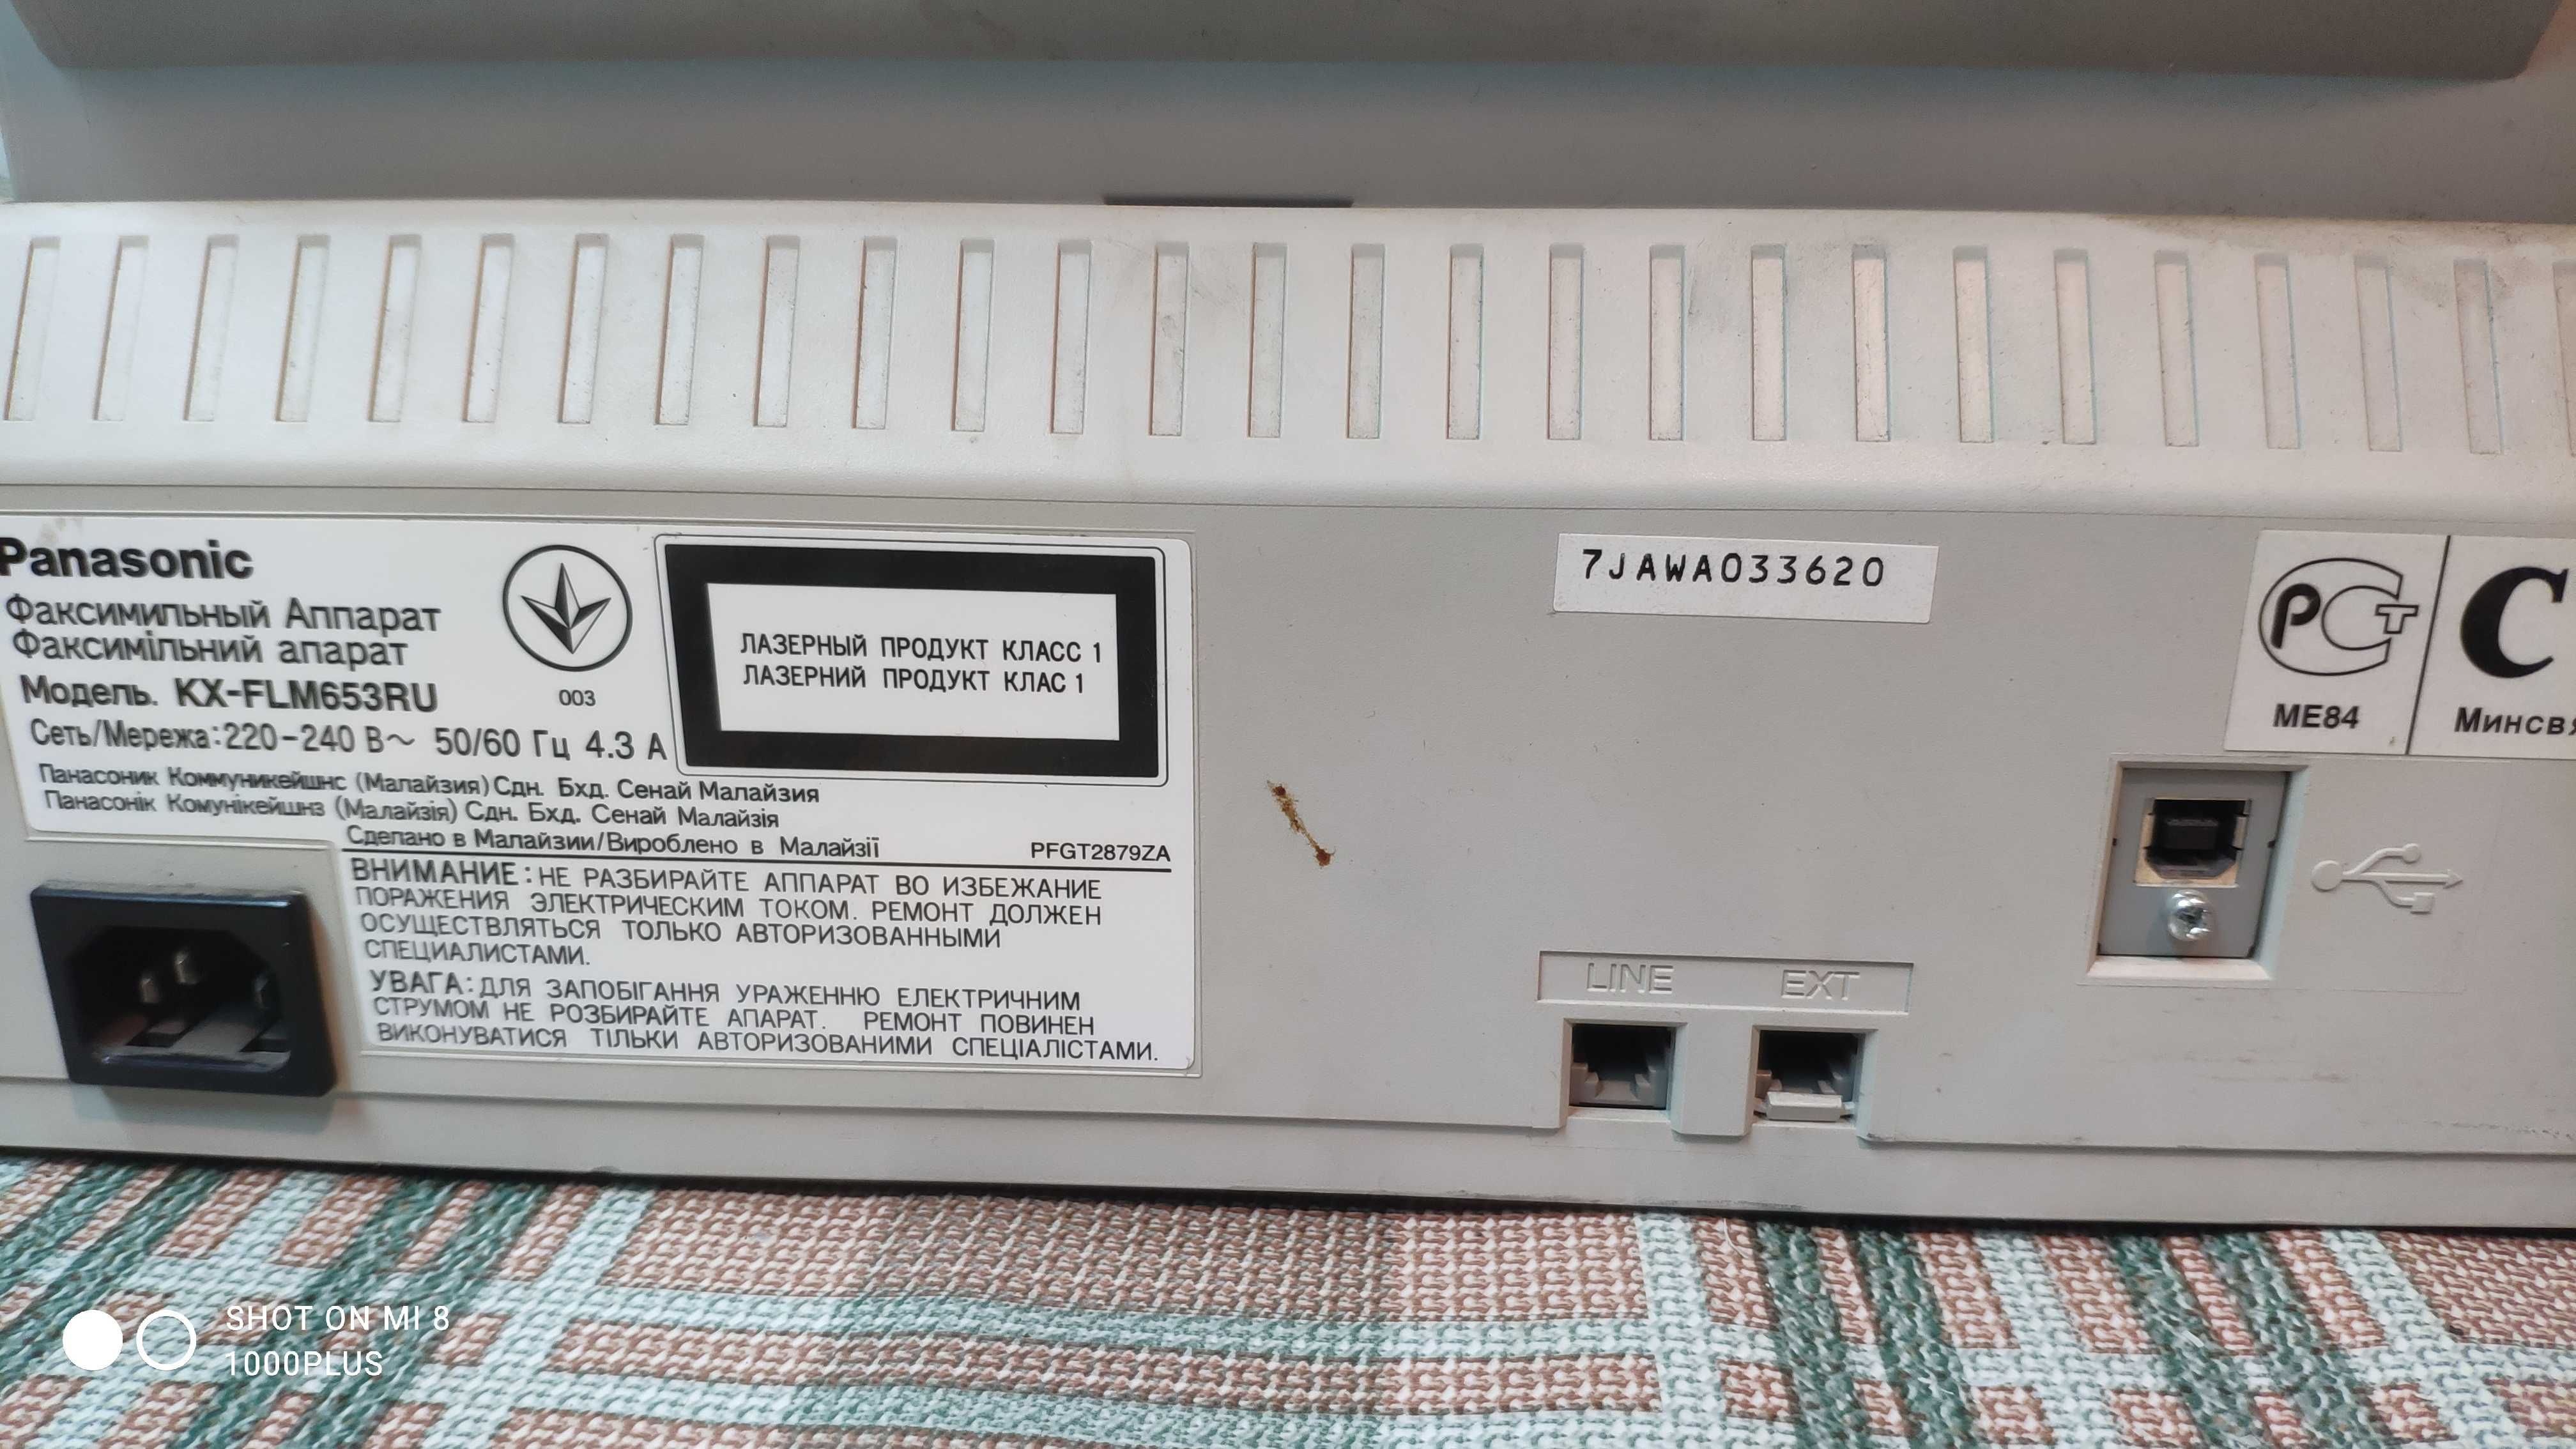 факс копир сканнер на обычной бумаге Panasonic KX-FLM653